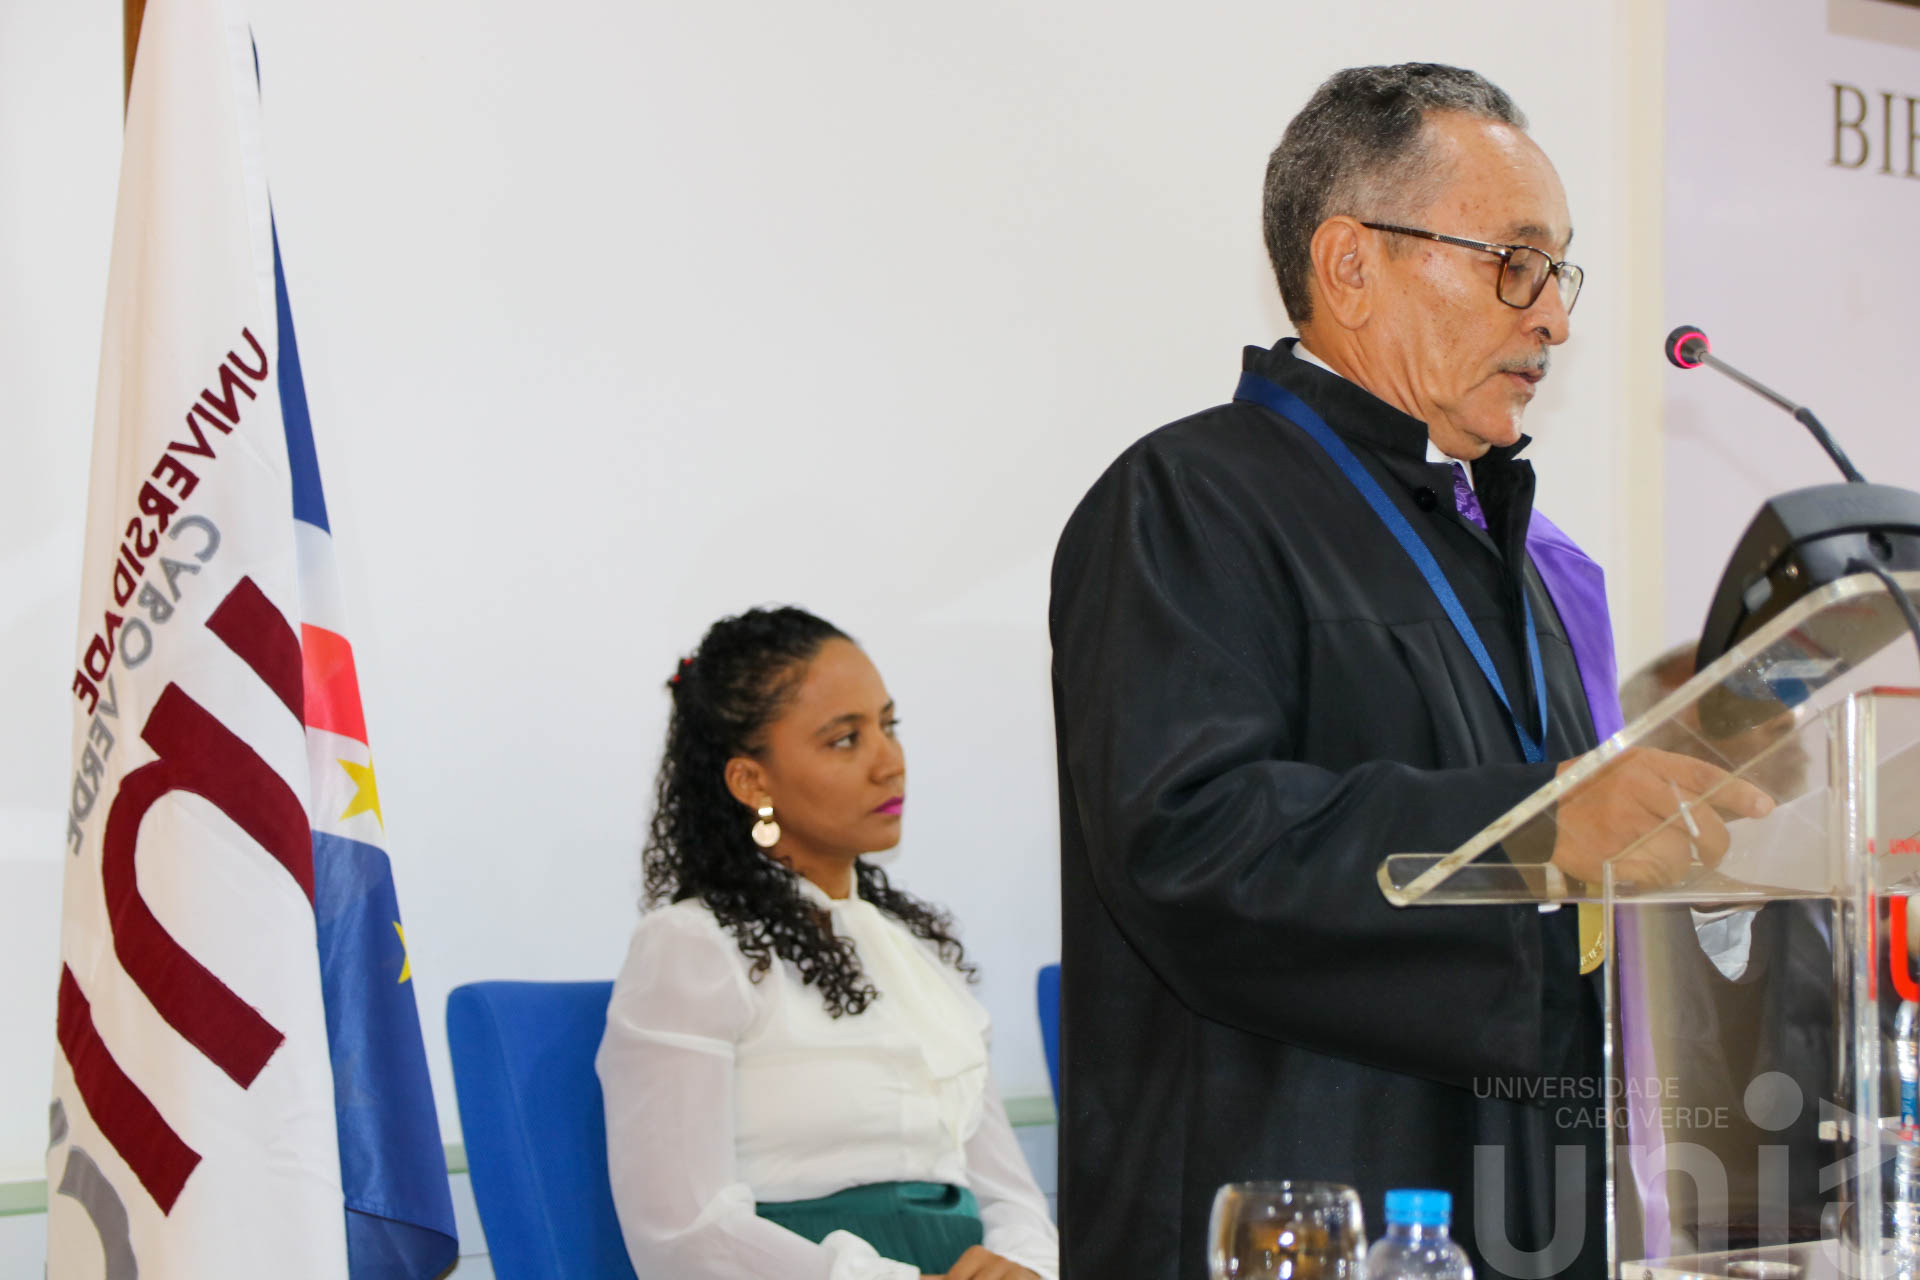 IMG_8616Carlos Reis, antigo Ministro da Educação em Cabo Verde, é Doutor Honoris Causa pela Universidade de Cabo Verde.jpg